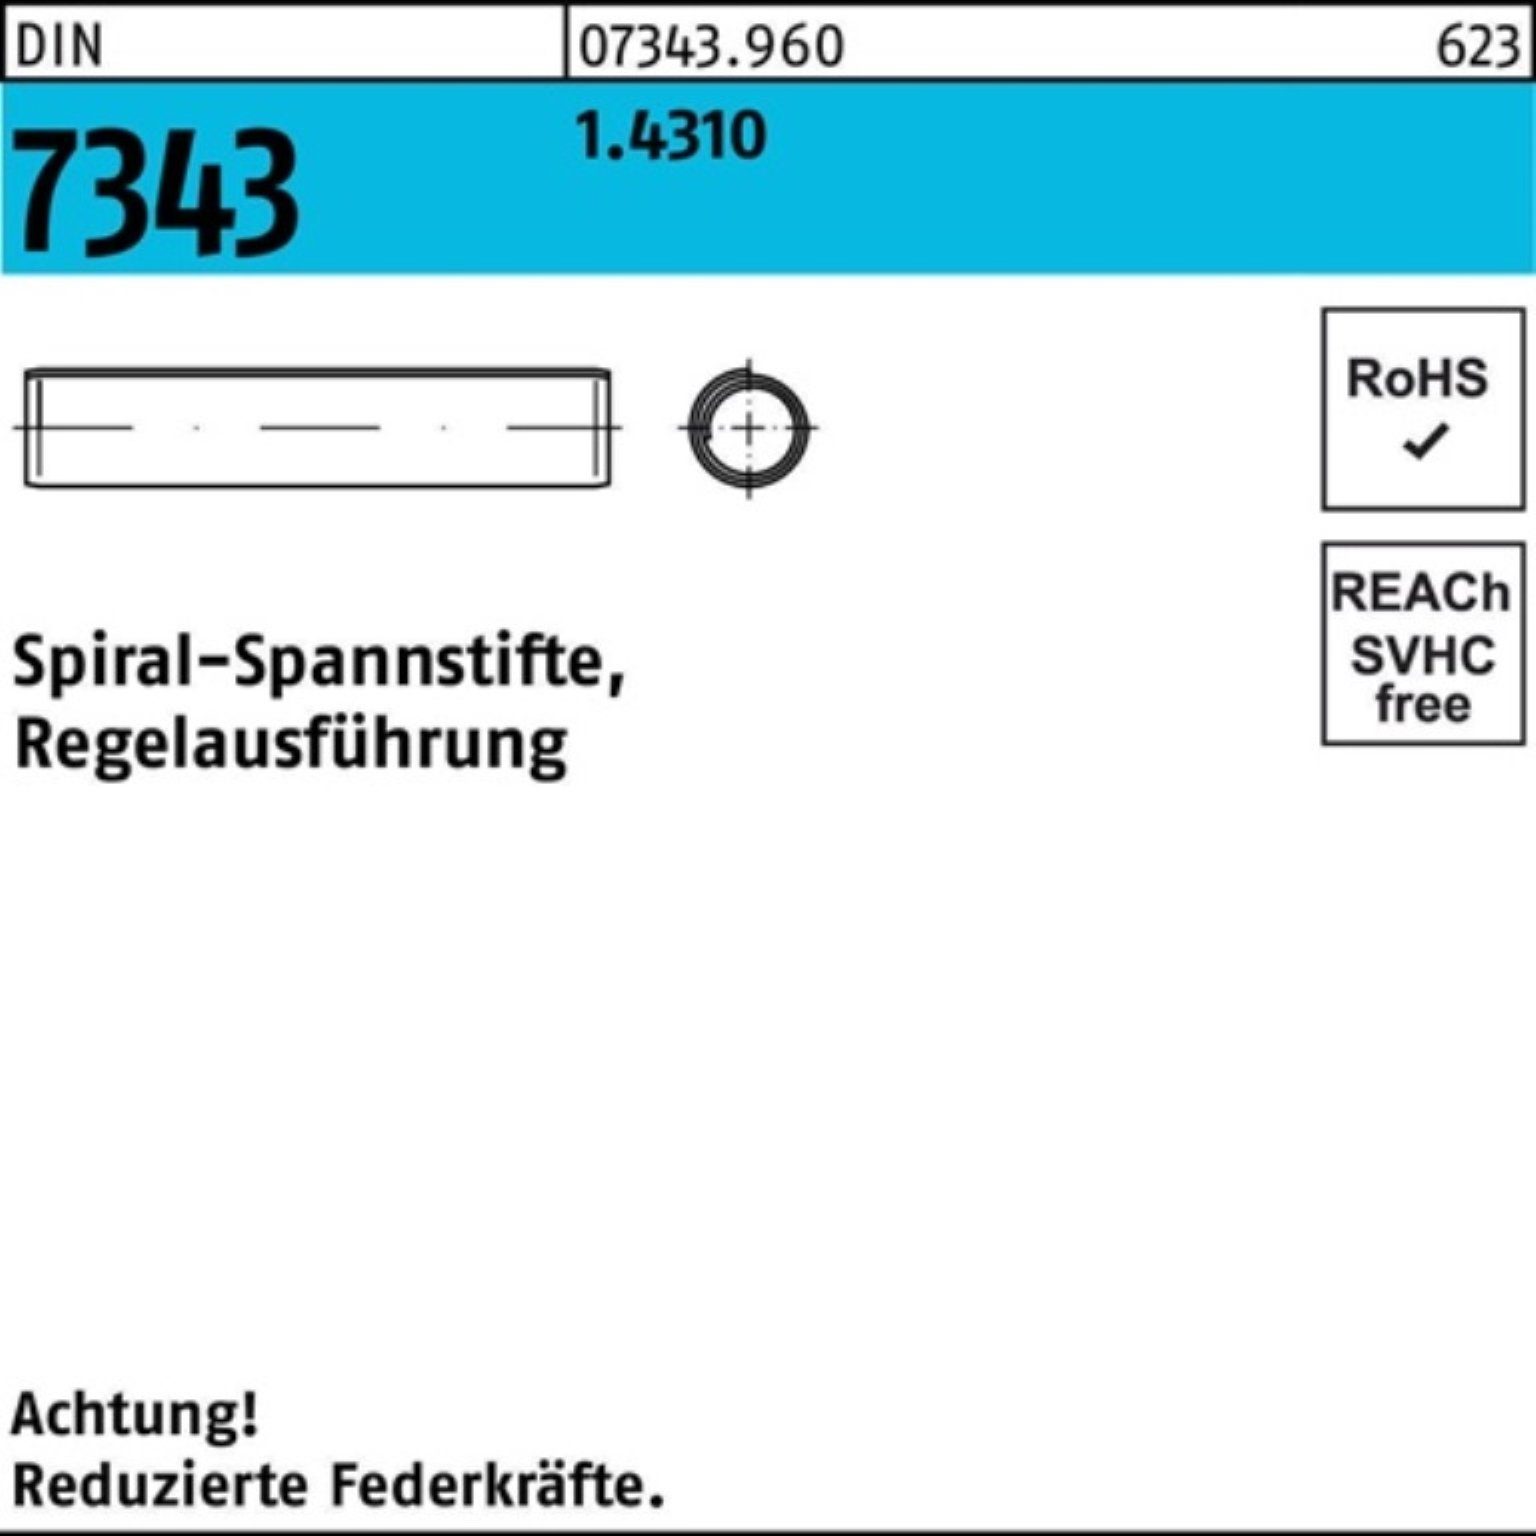 Reyher Spannstift 1000er 3x Pack 7343/ISO DIN Regelausf. 18 8750 1.4310 Spiralspannstift